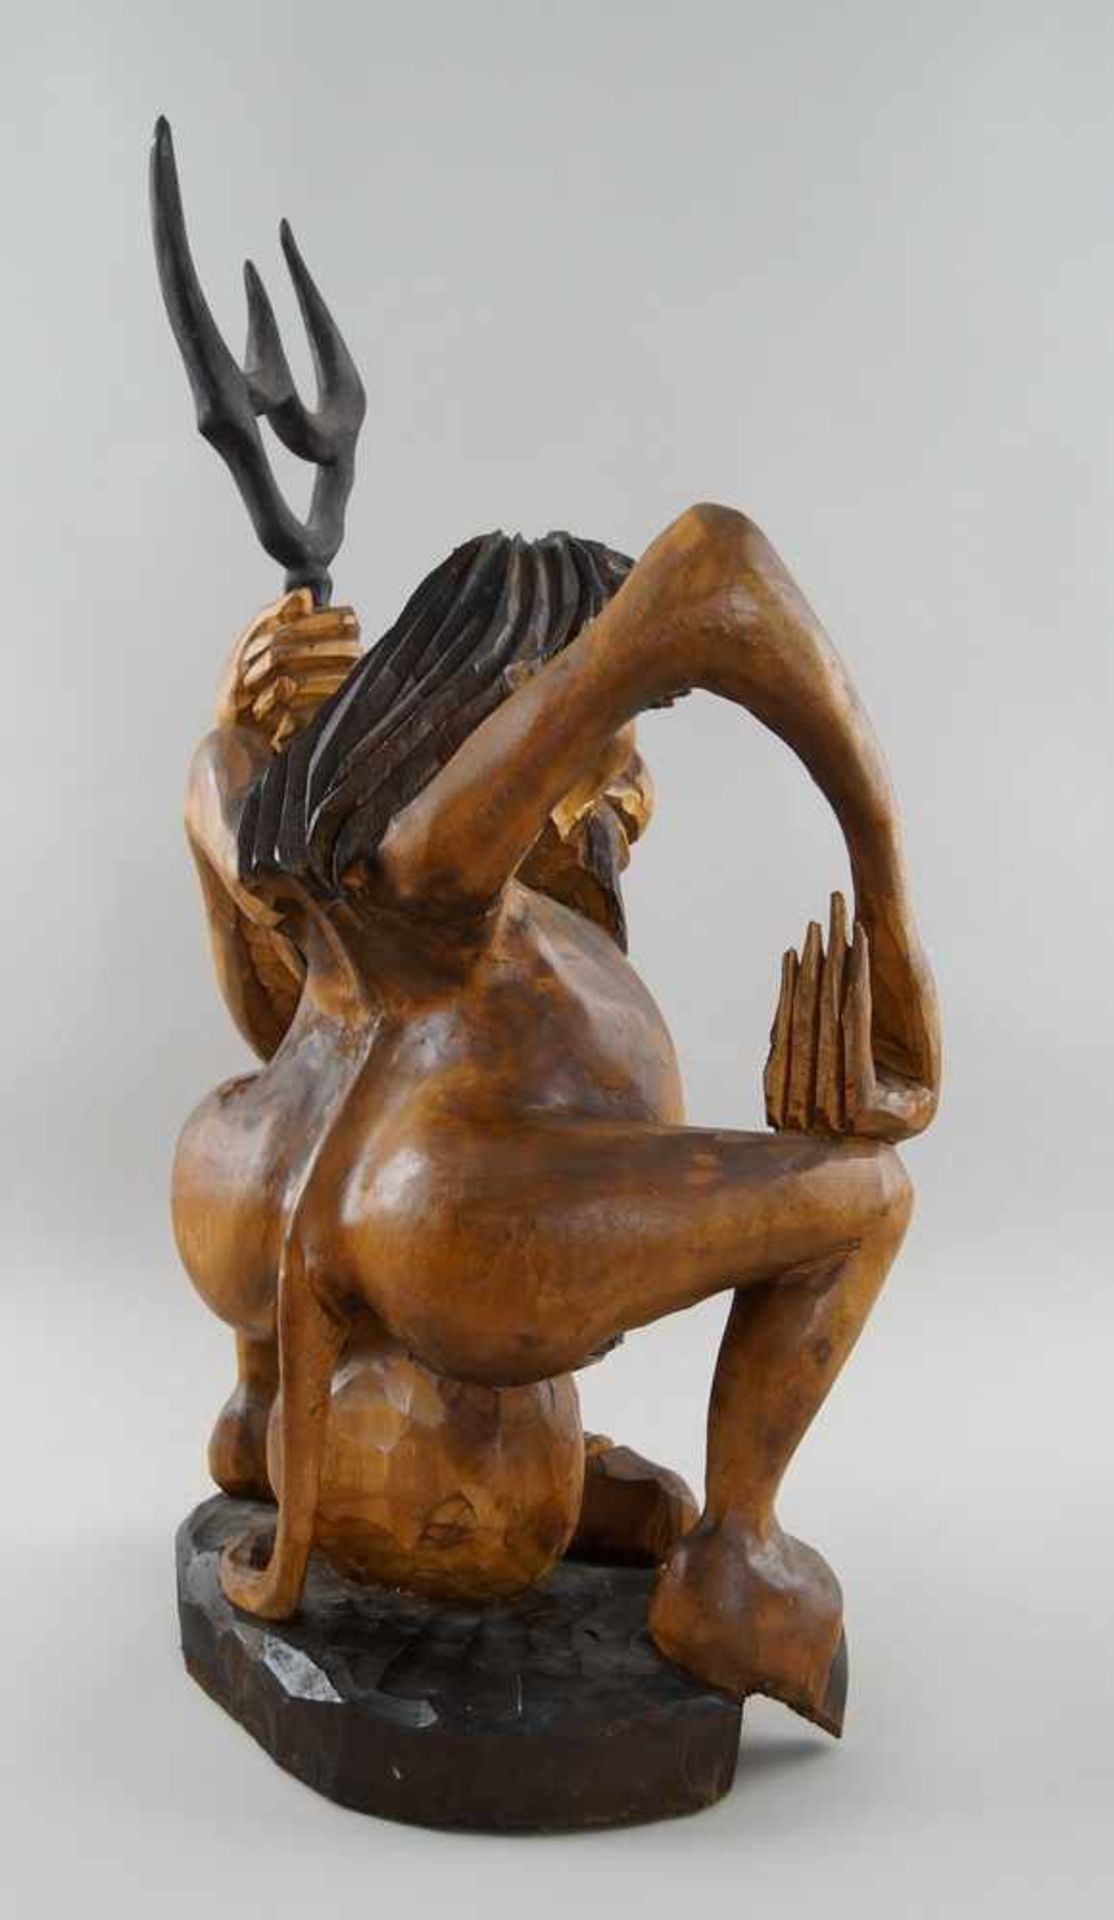 Hockender Teufel mit übergrossem Penis, Holz geschnitzt und gefasst, H 69 cm - Bild 6 aus 6